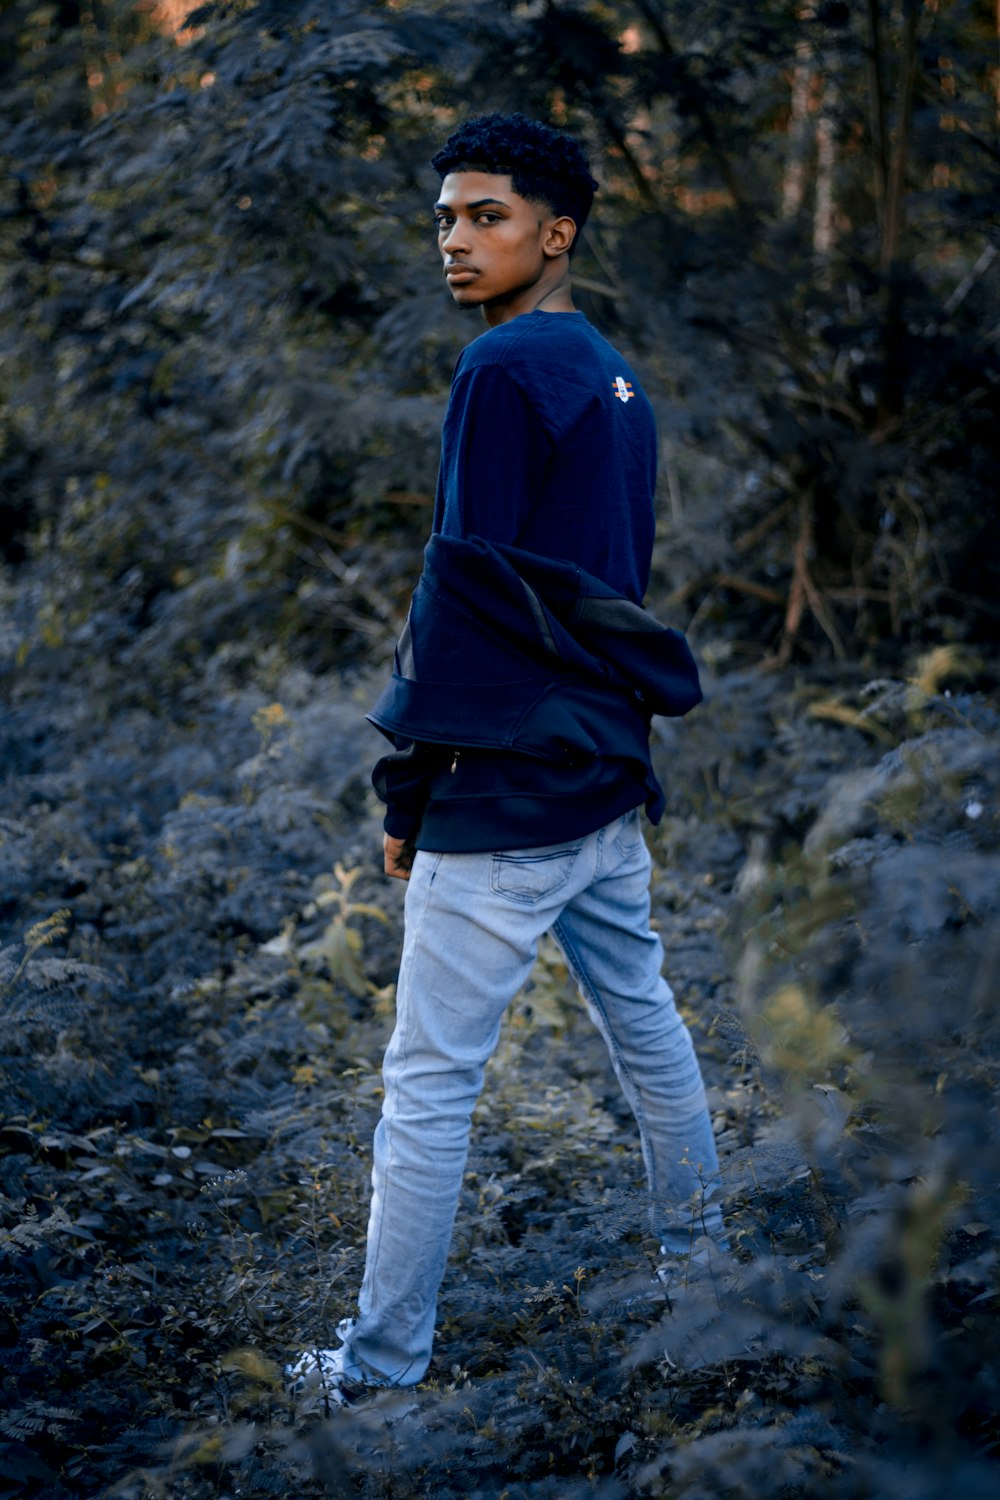 Uomo in felpa con cappuccio blu e pantaloni bianchi in piedi su un terreno  roccioso foto – Santo domingo Immagine gratuita su Unsplash